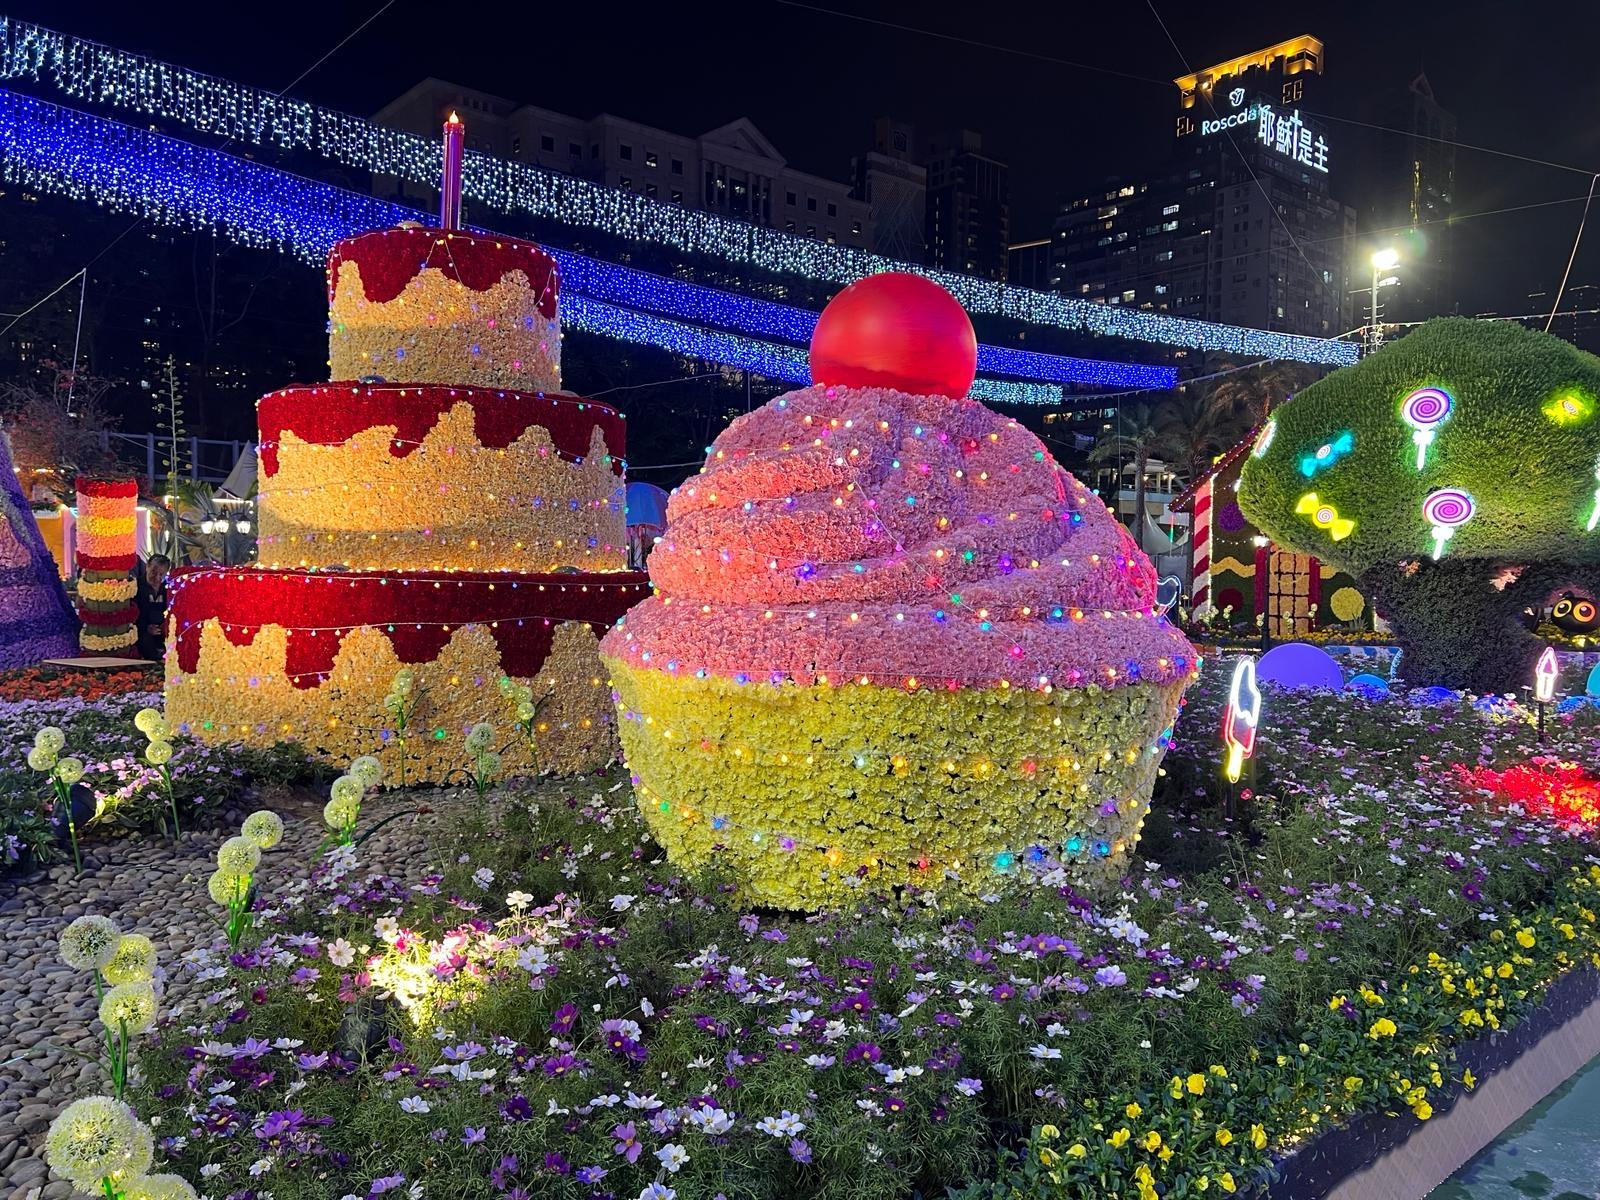 二○二四年香港花卉展览（花展）明日（三月十五日）至三月二十四日在维多利亚公园举行。今年花展的主题花是香彩雀，以「雀跃全城」为主题。晚上各个大型园林造景均加入灯光效果，让游人享受到不同的视觉体验。图示以《糖果屋》为主题的园林造景。